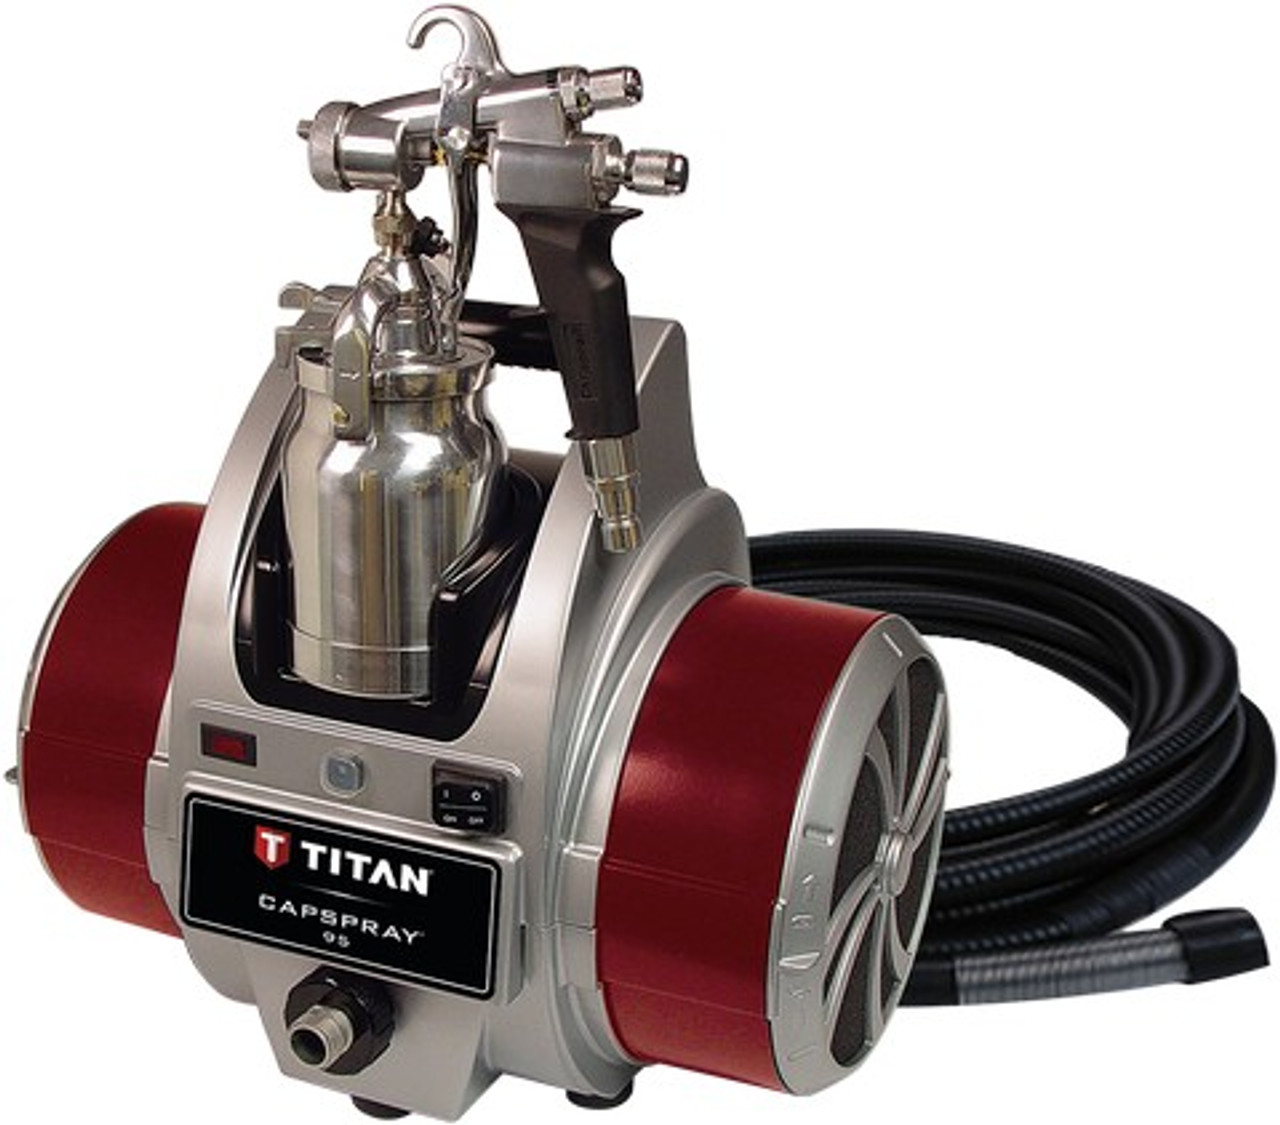 Titan 0524032 Capspray 95 HVLP 4-Stage Paint Sprayer w/Maxum II Gun & 30' Hose